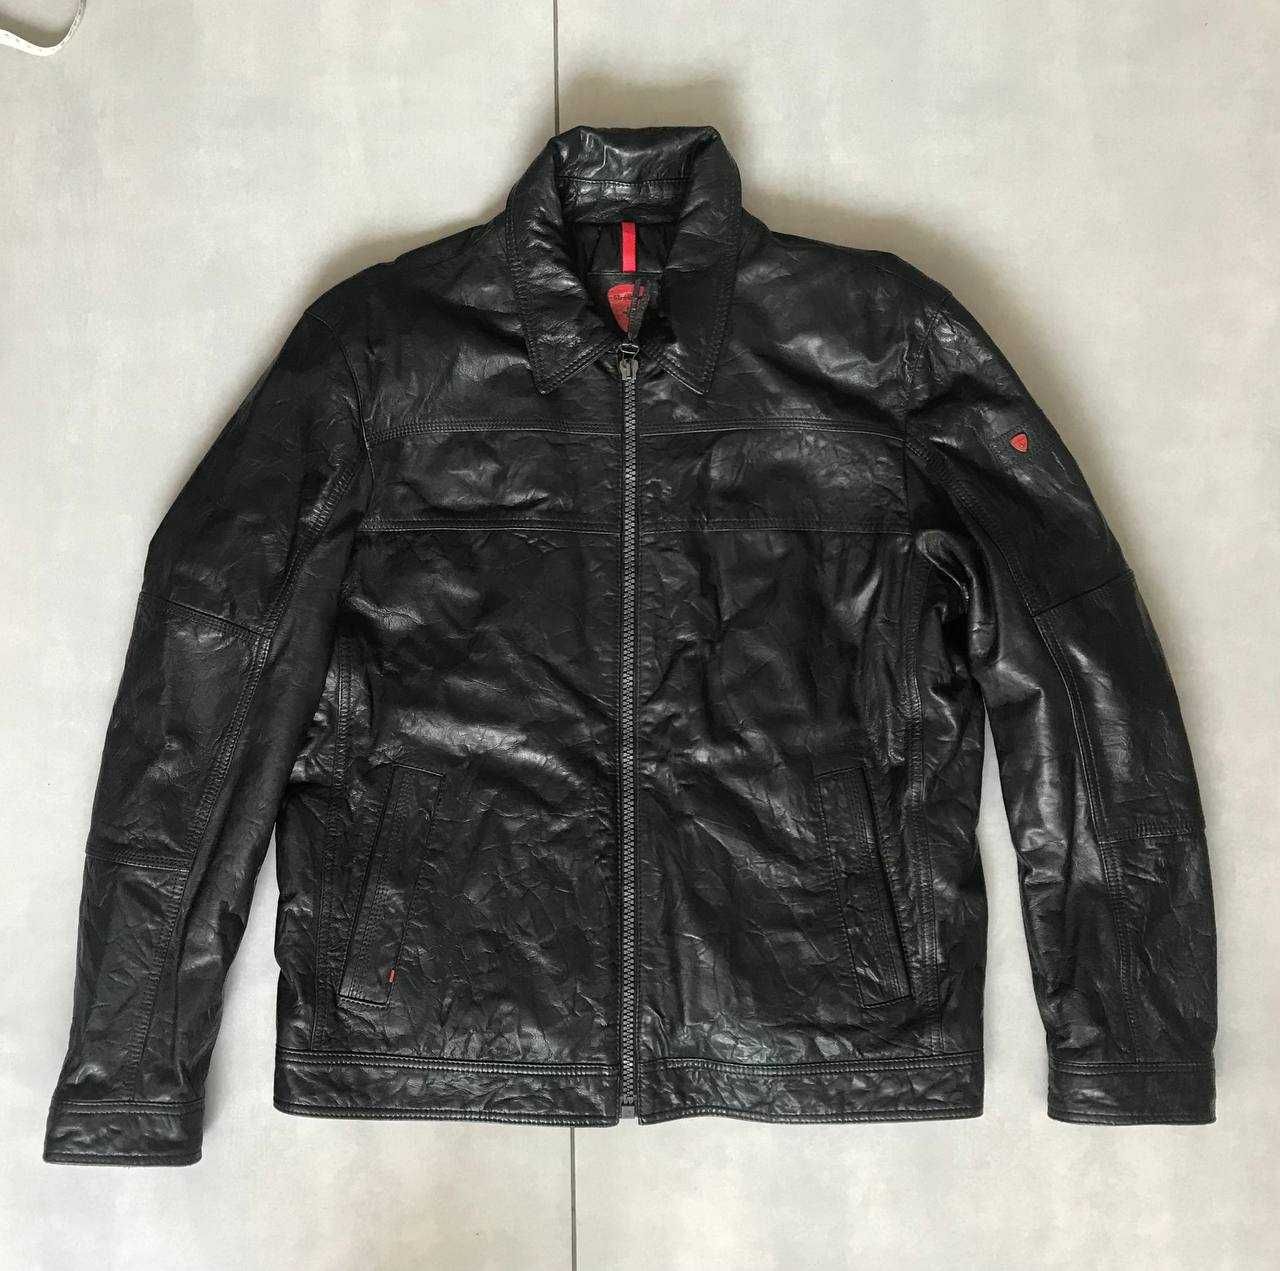 Размер L. Кожаная курточка куртка Strellson leather jacket